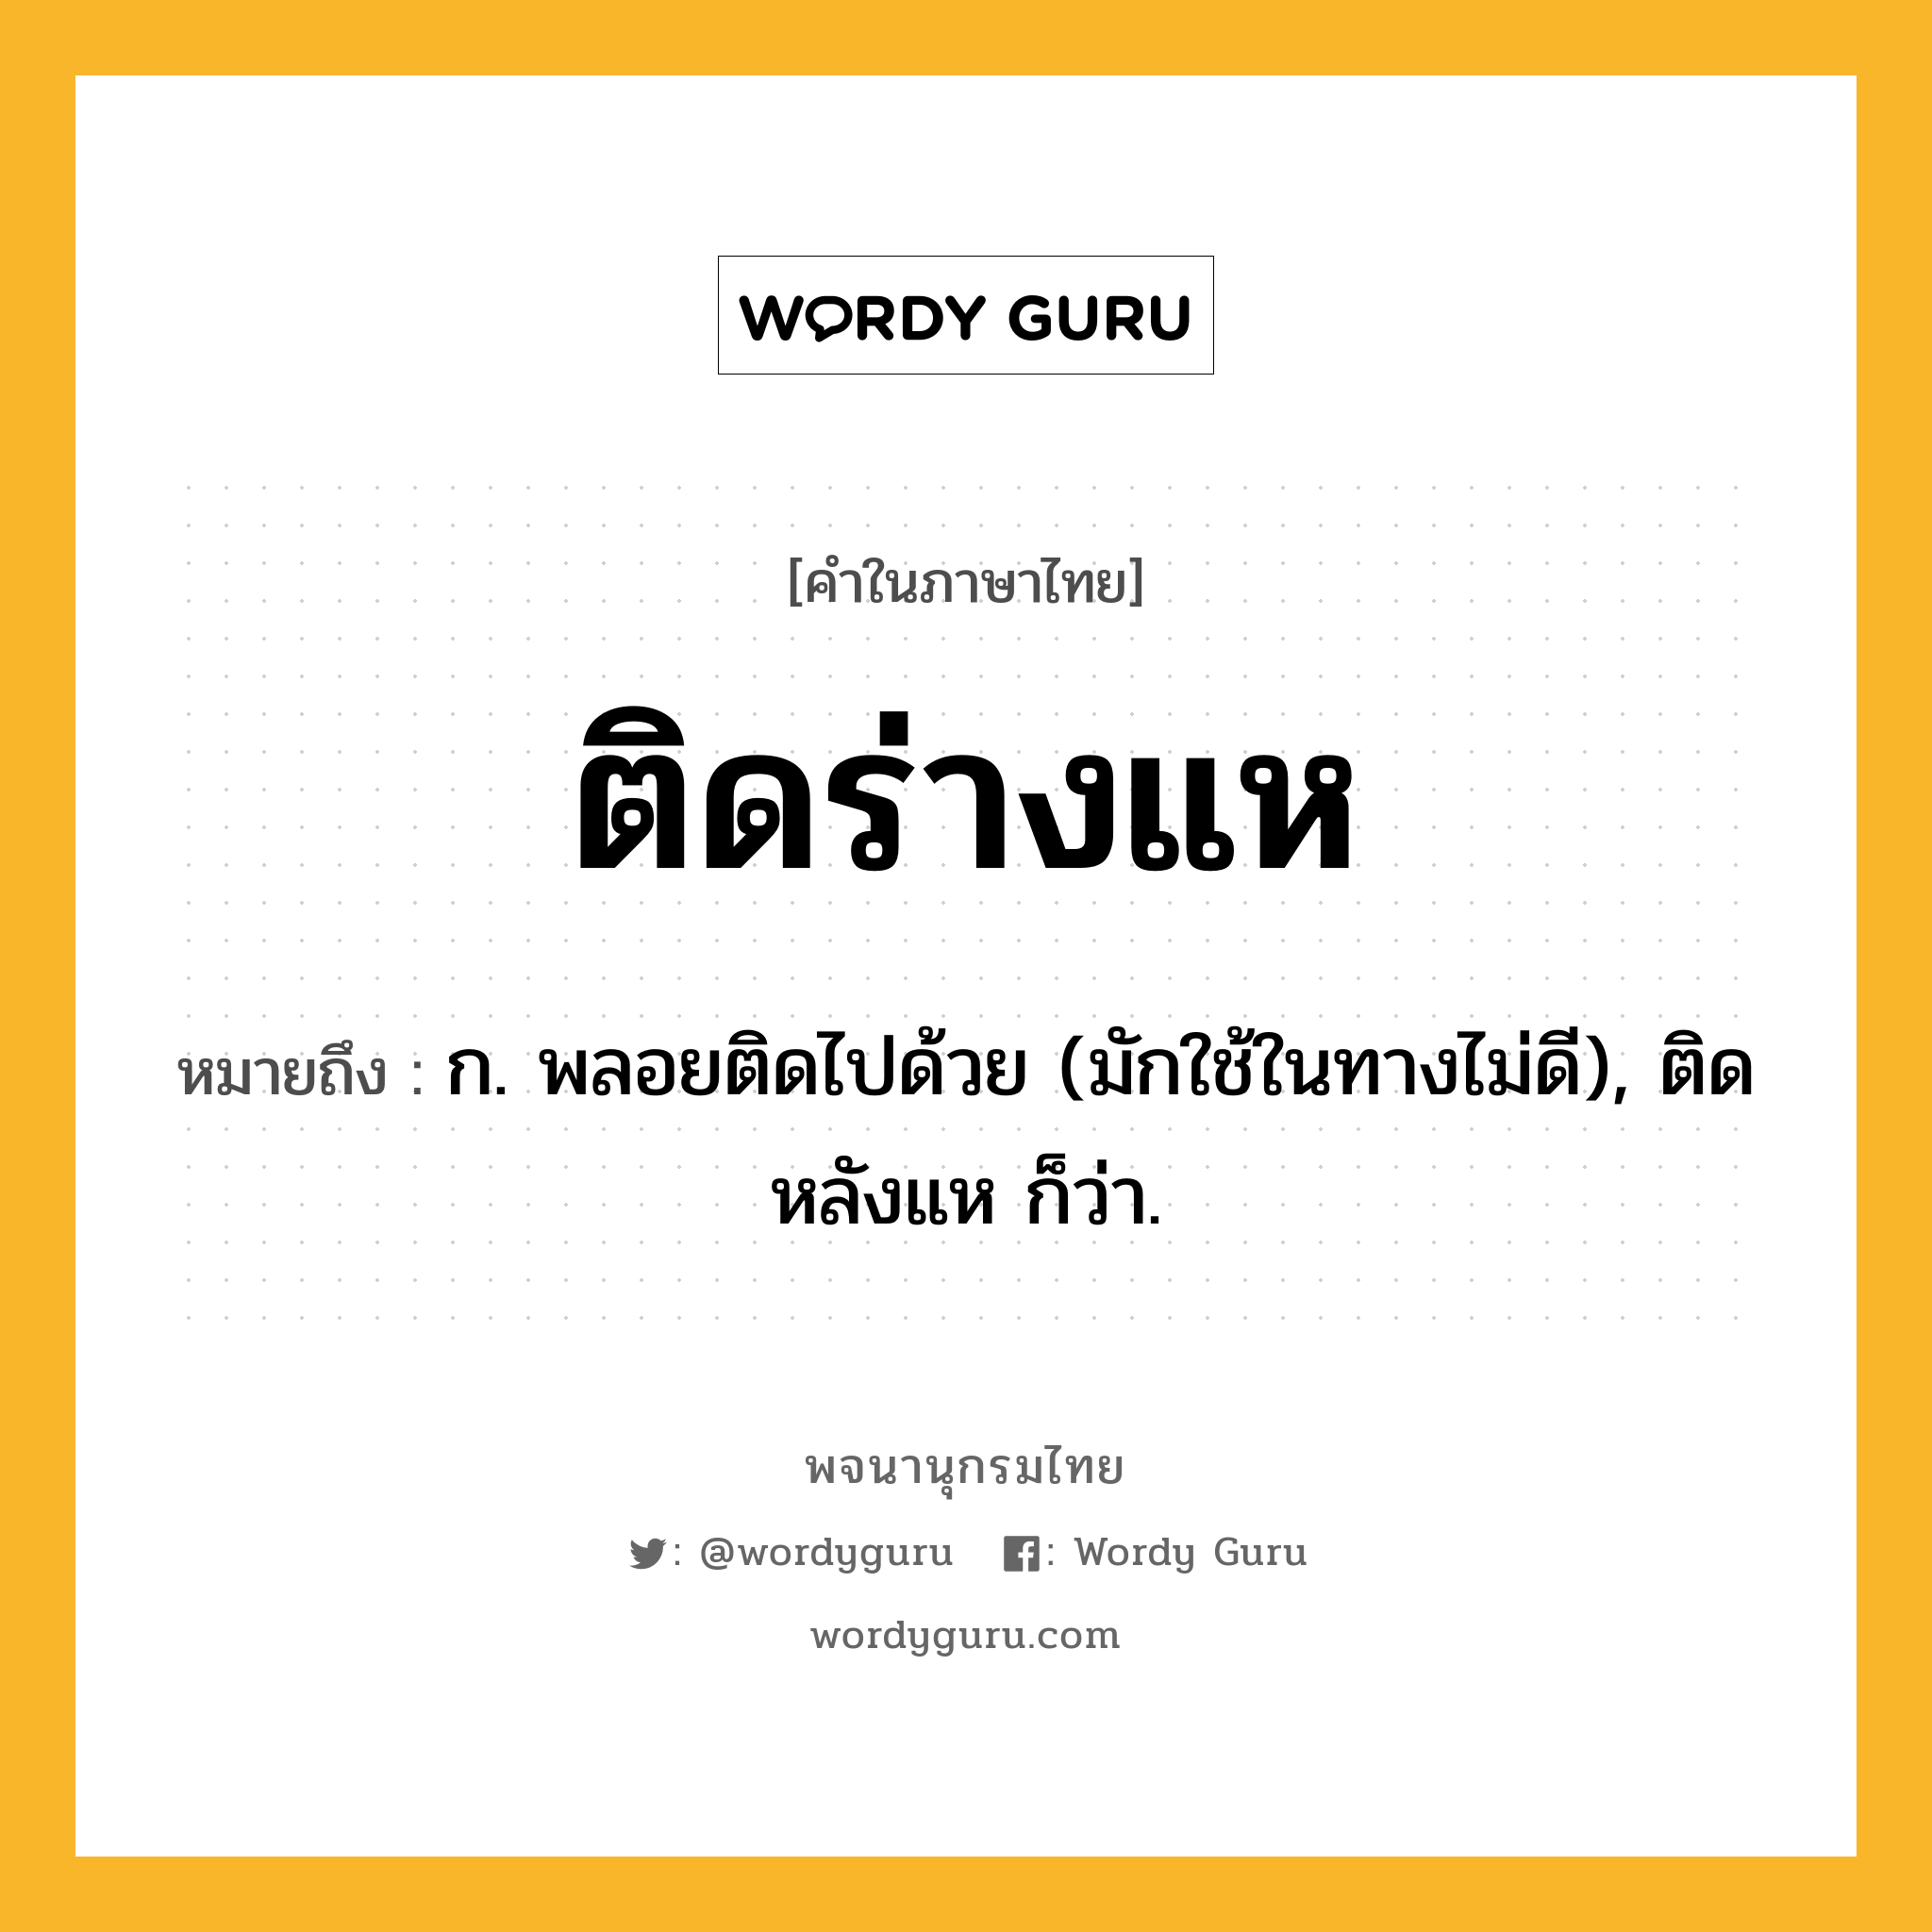 ติดร่างแห หมายถึงอะไร?, คำในภาษาไทย ติดร่างแห หมายถึง ก. พลอยติดไปด้วย (มักใช้ในทางไม่ดี), ติดหลังแห ก็ว่า.